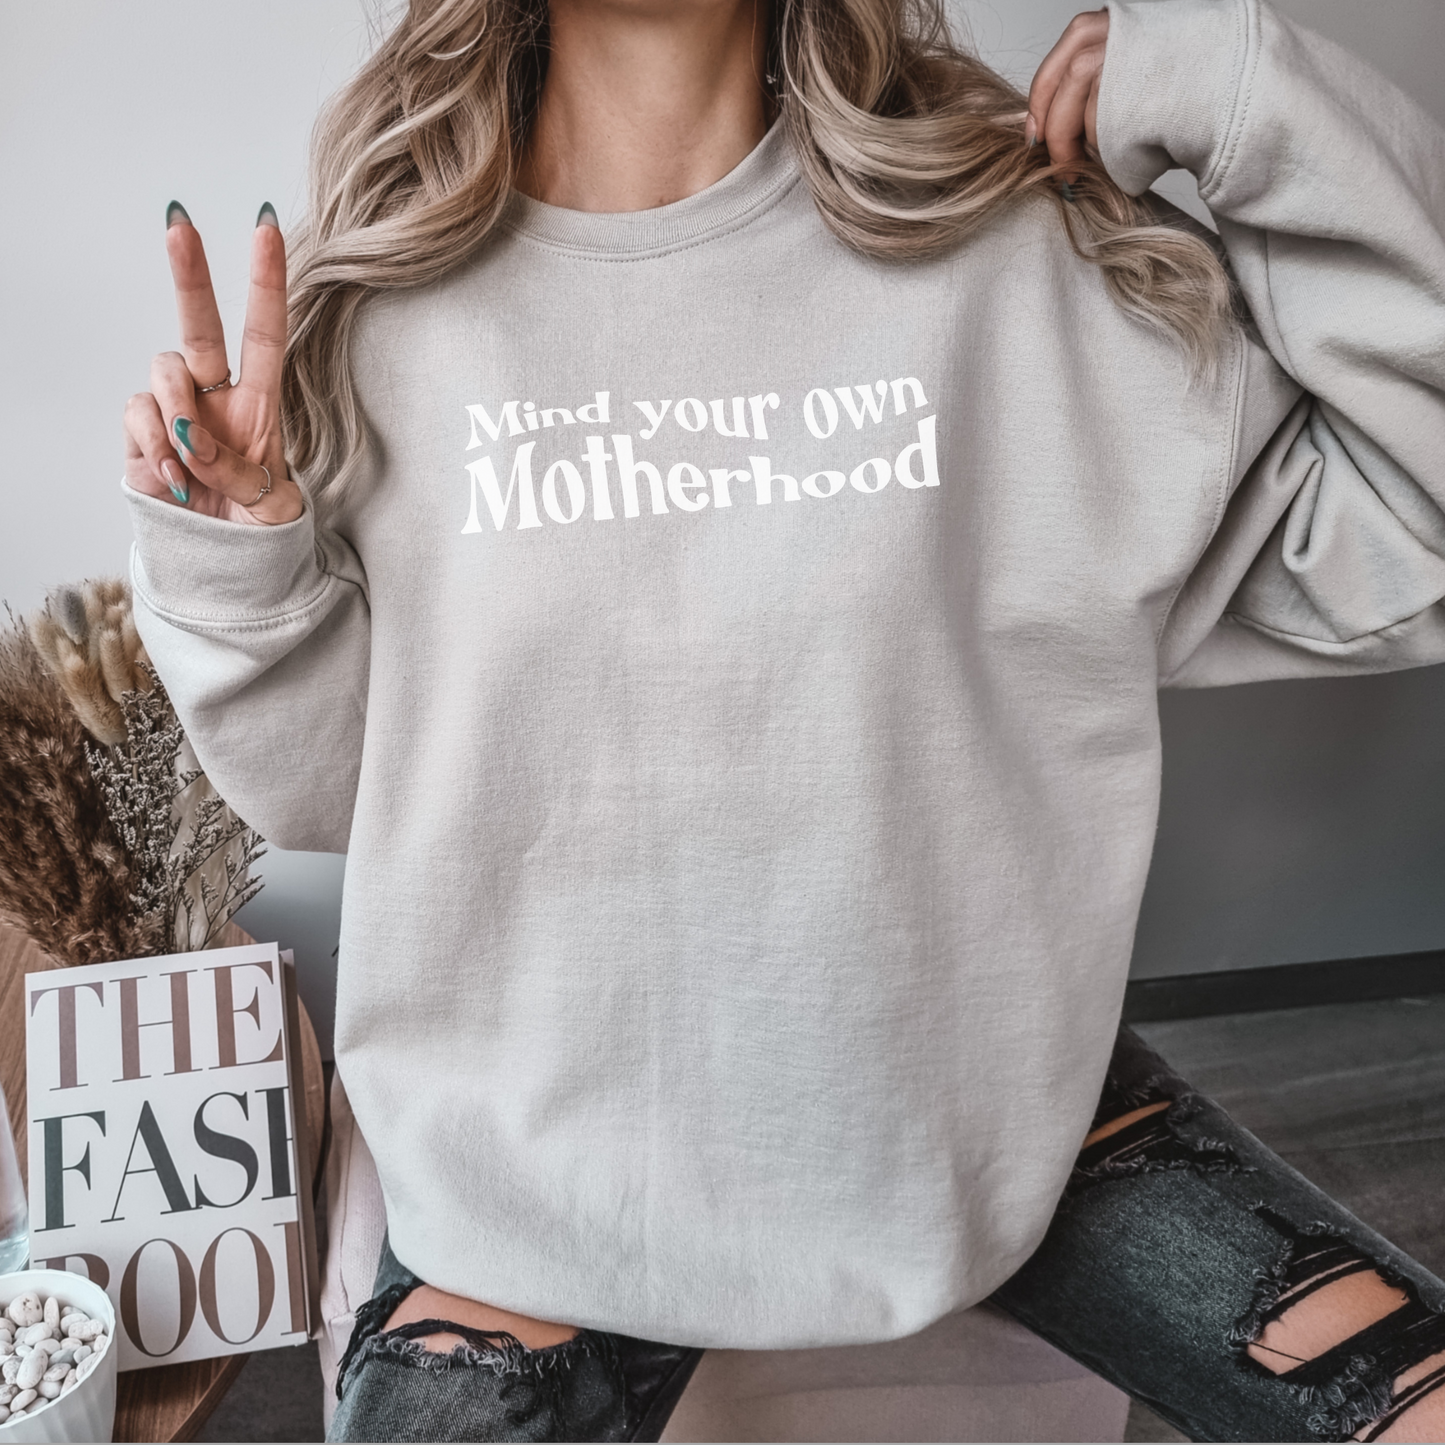 Mind Your Own Motherhood Sweatshirt, Mother Mama Mom Sweatshirt, Cute Trendy Mom Sweatshirt, Women Hoodies, Funny Sarcastic Sweatshirt